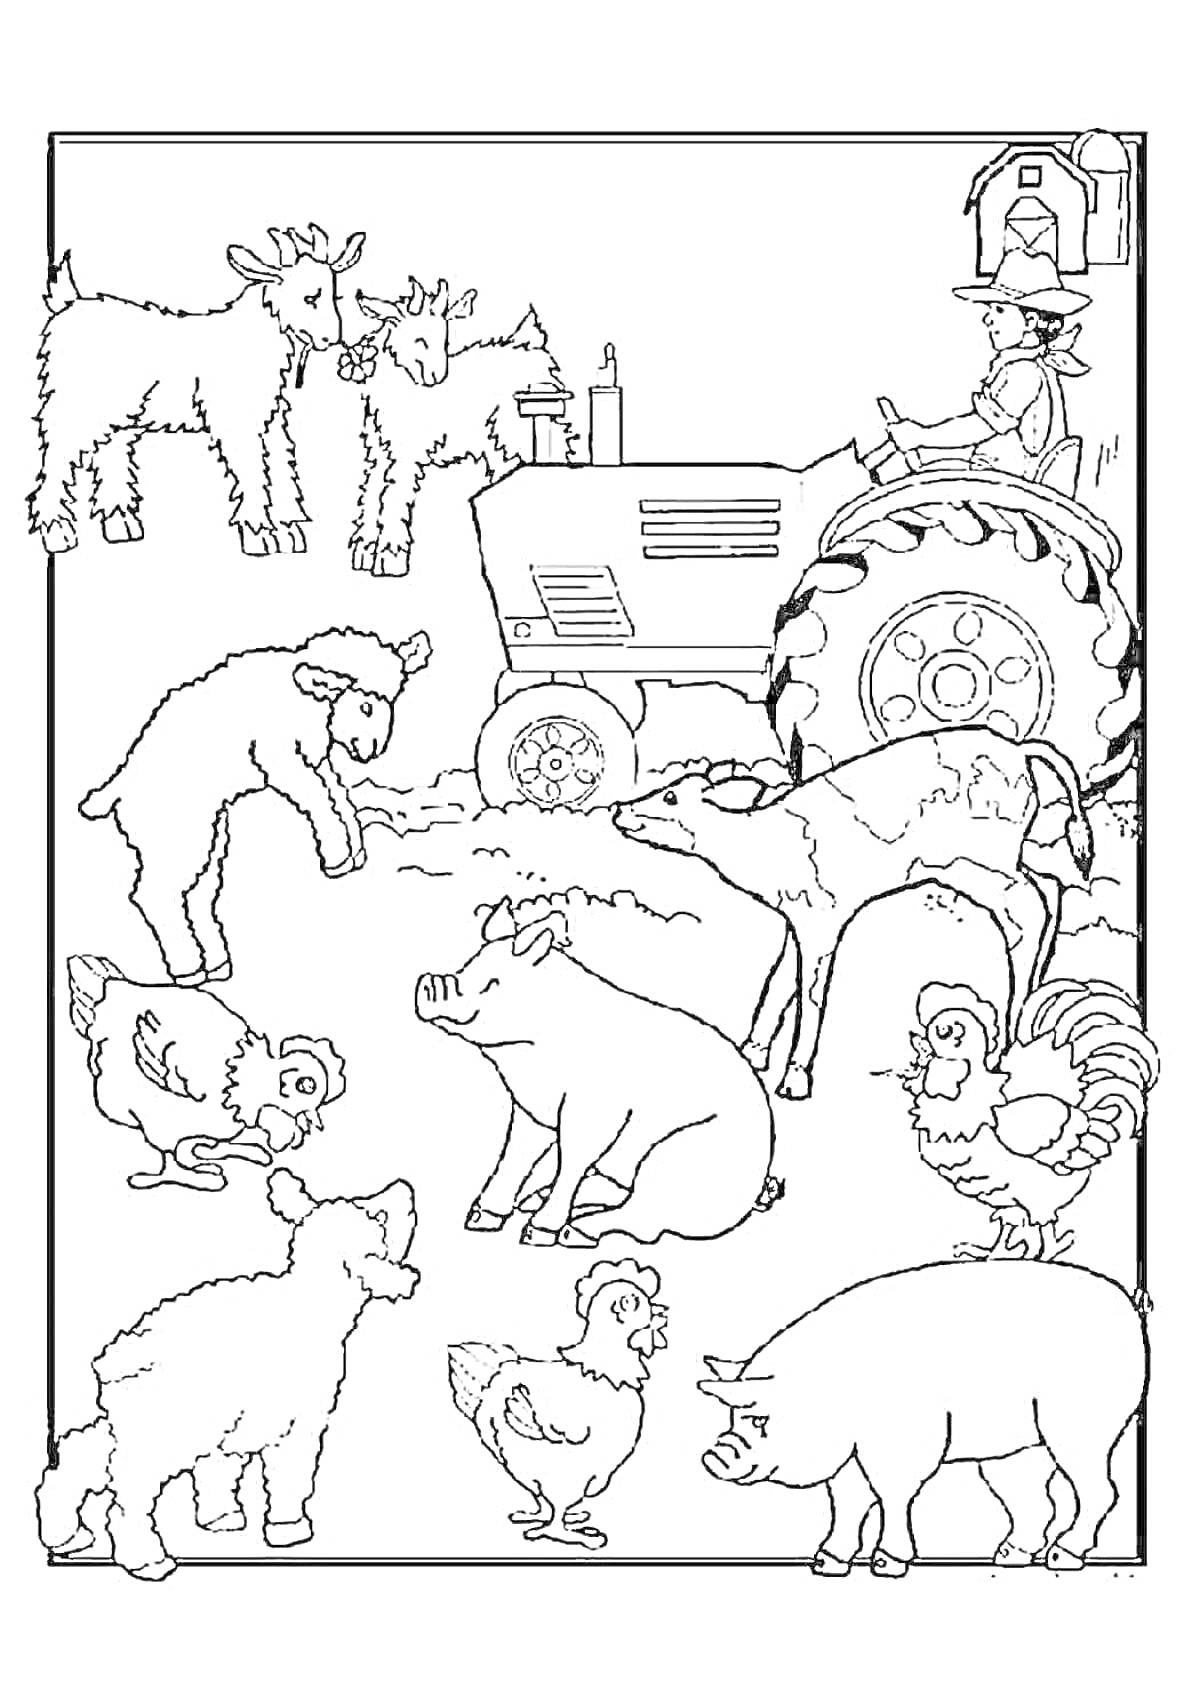 На раскраске изображено: Козы, Свиньи, Поросята, Цыплята, Петух, Корова, Фермер, Трактор, Домашние животные, Сельское хозяйство, Ферма